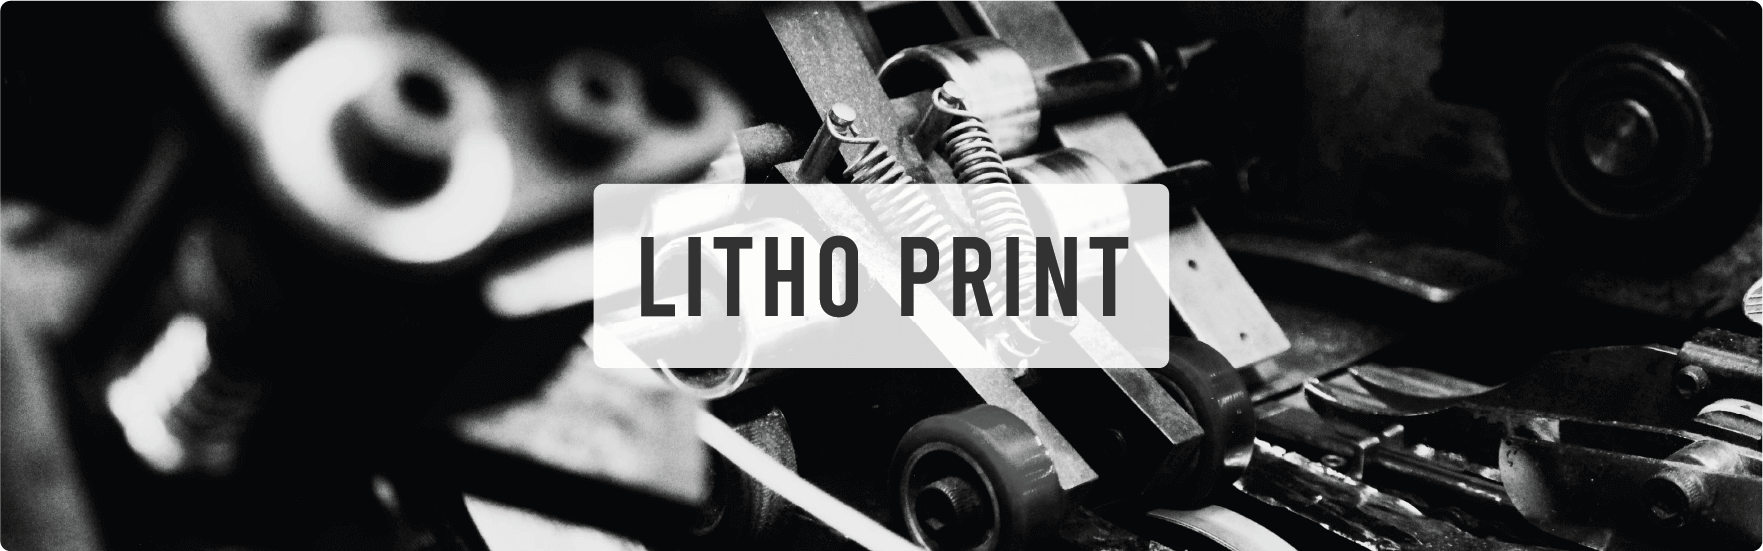 Litho Print